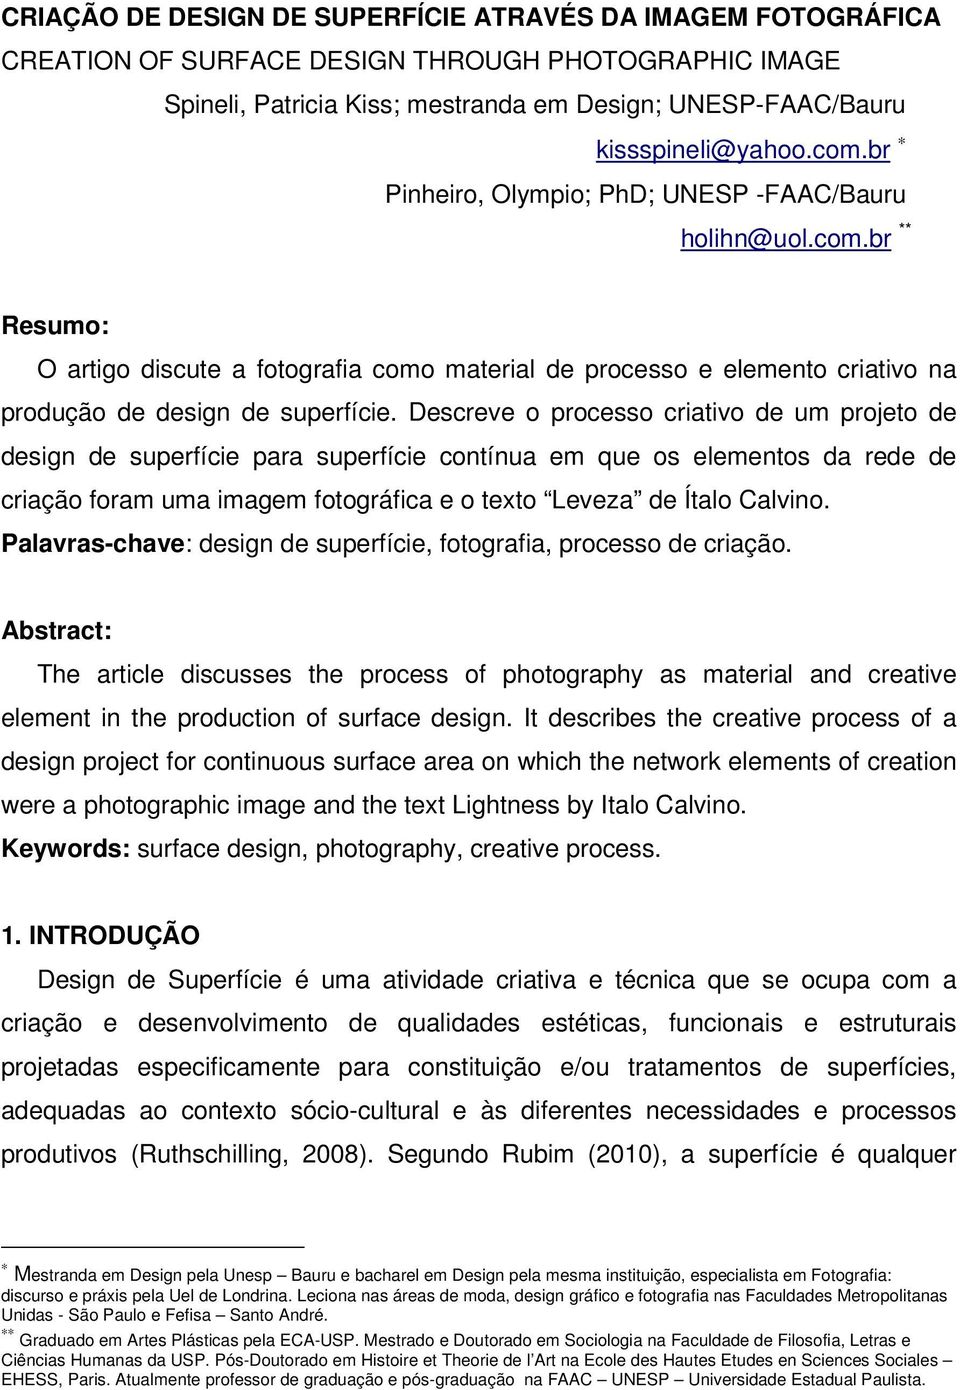 Descreve o processo criativo de um projeto de design de superfície para superfície contínua em que os elementos da rede de criação foram uma imagem fotográfica e o texto Leveza de Ítalo Calvino.